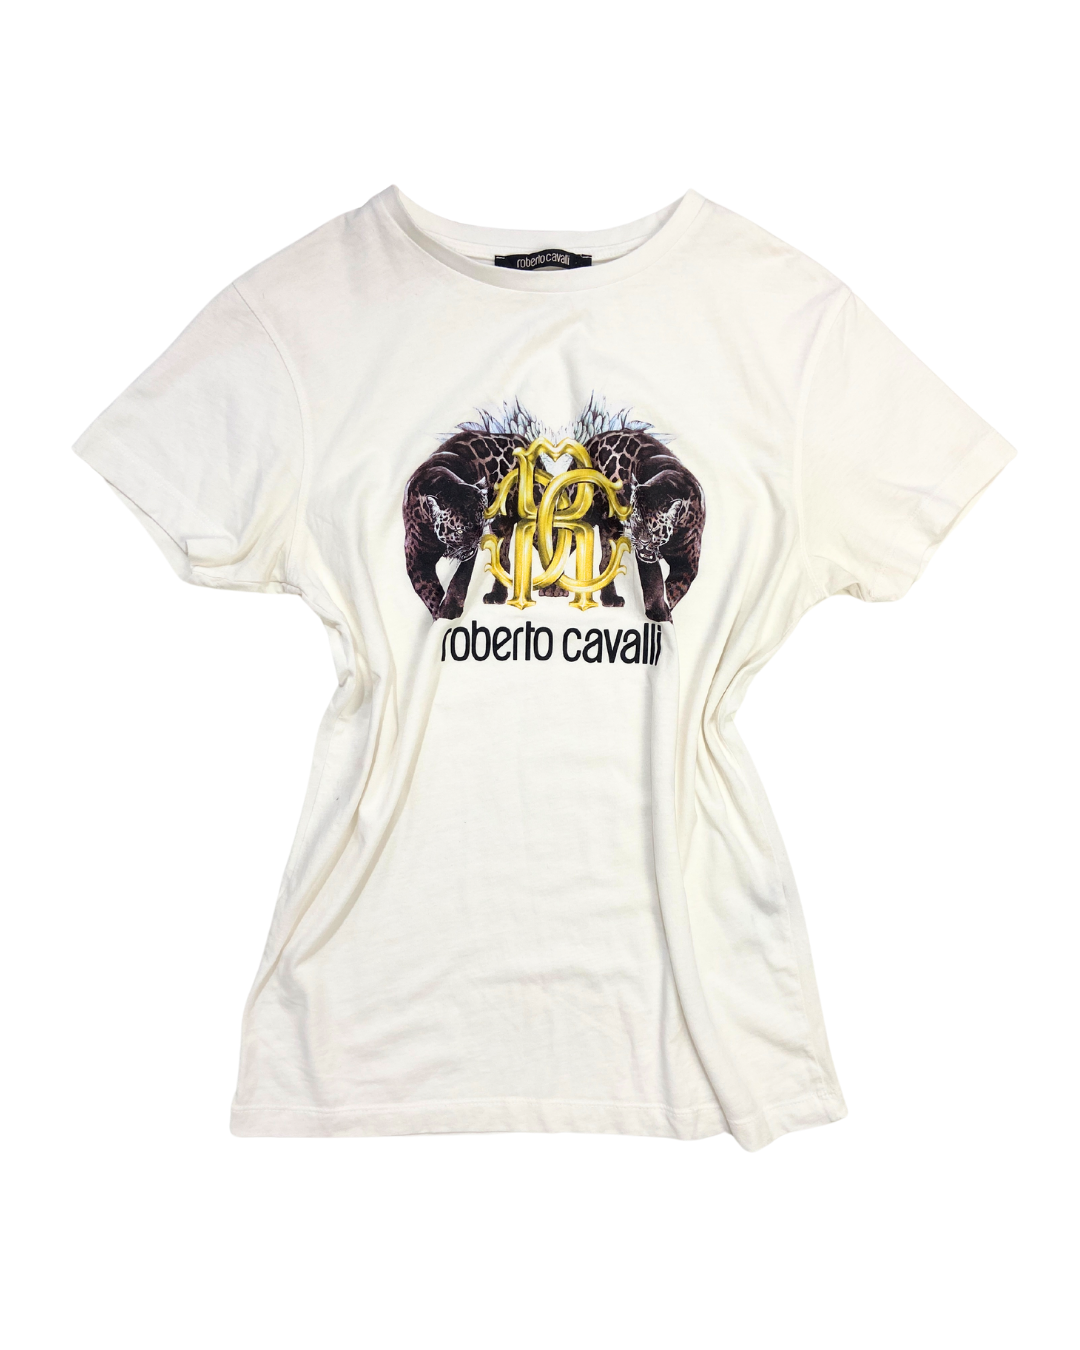 Roberto Cavalli Graphic White T-Shirt